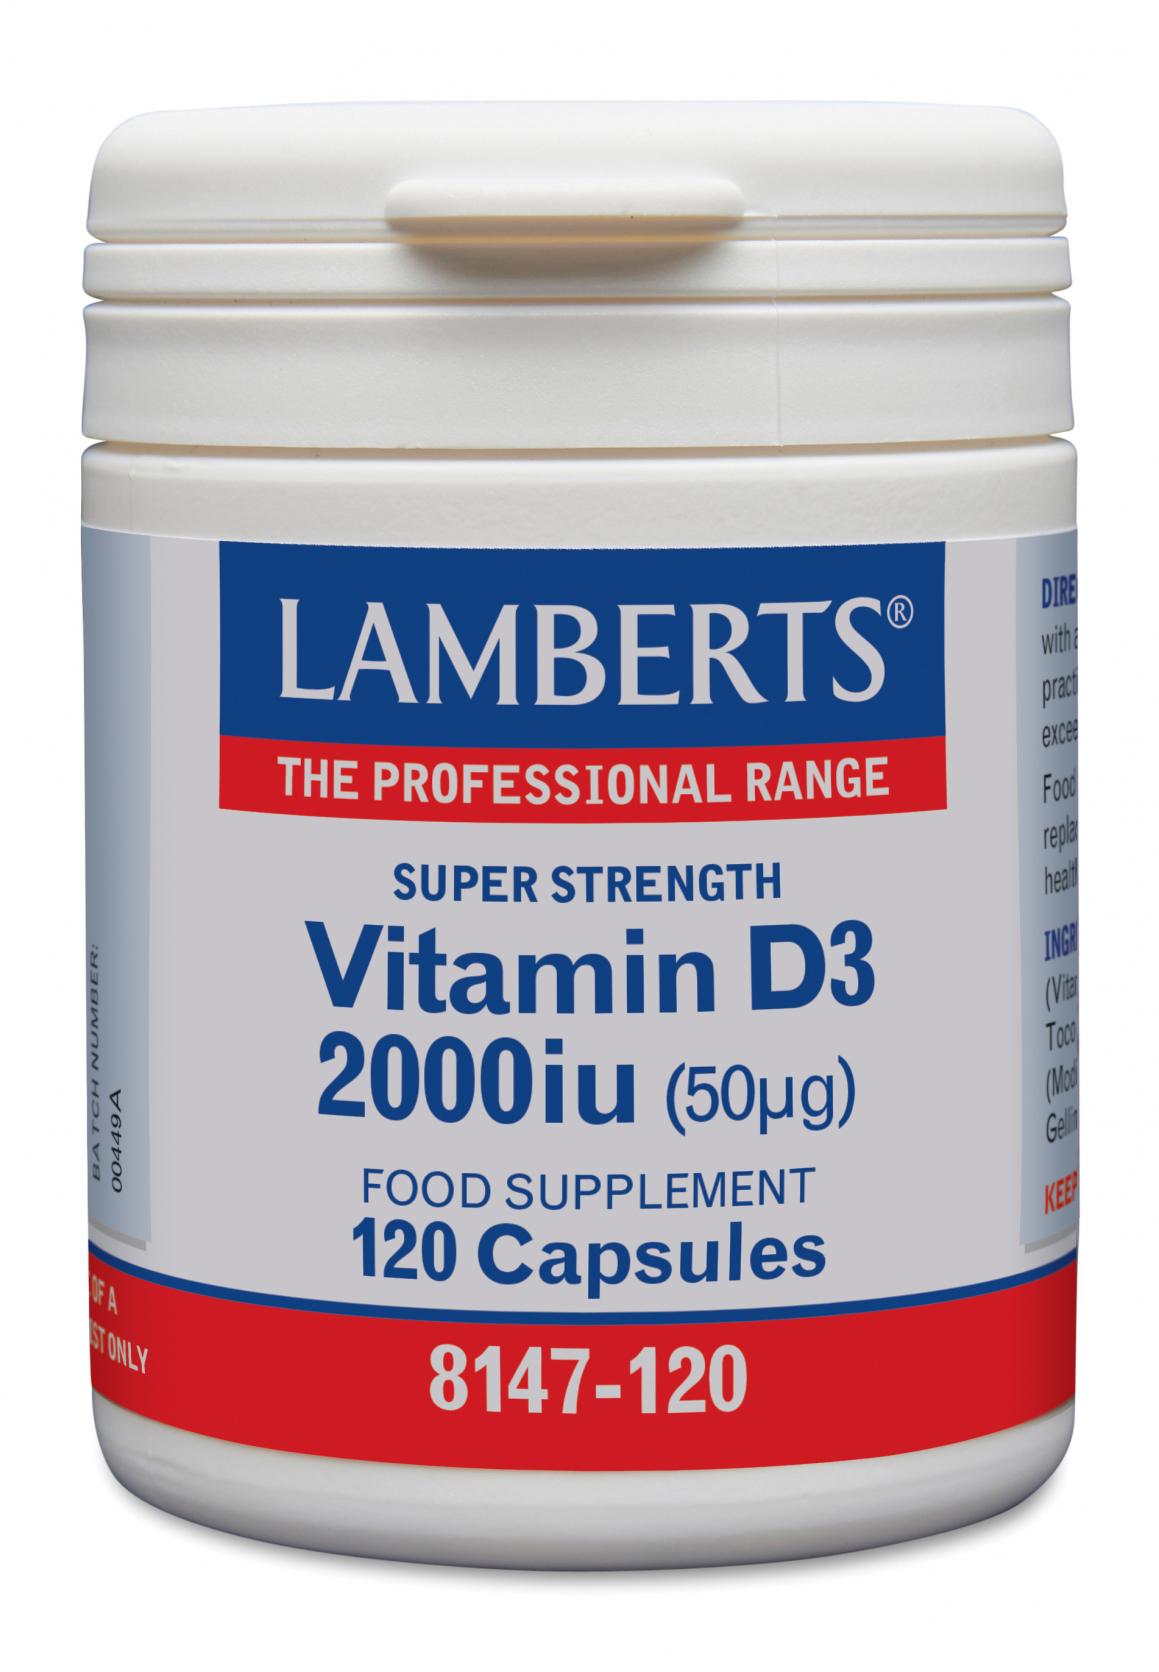 Lamberts Vitamin D3 2000iu 120's